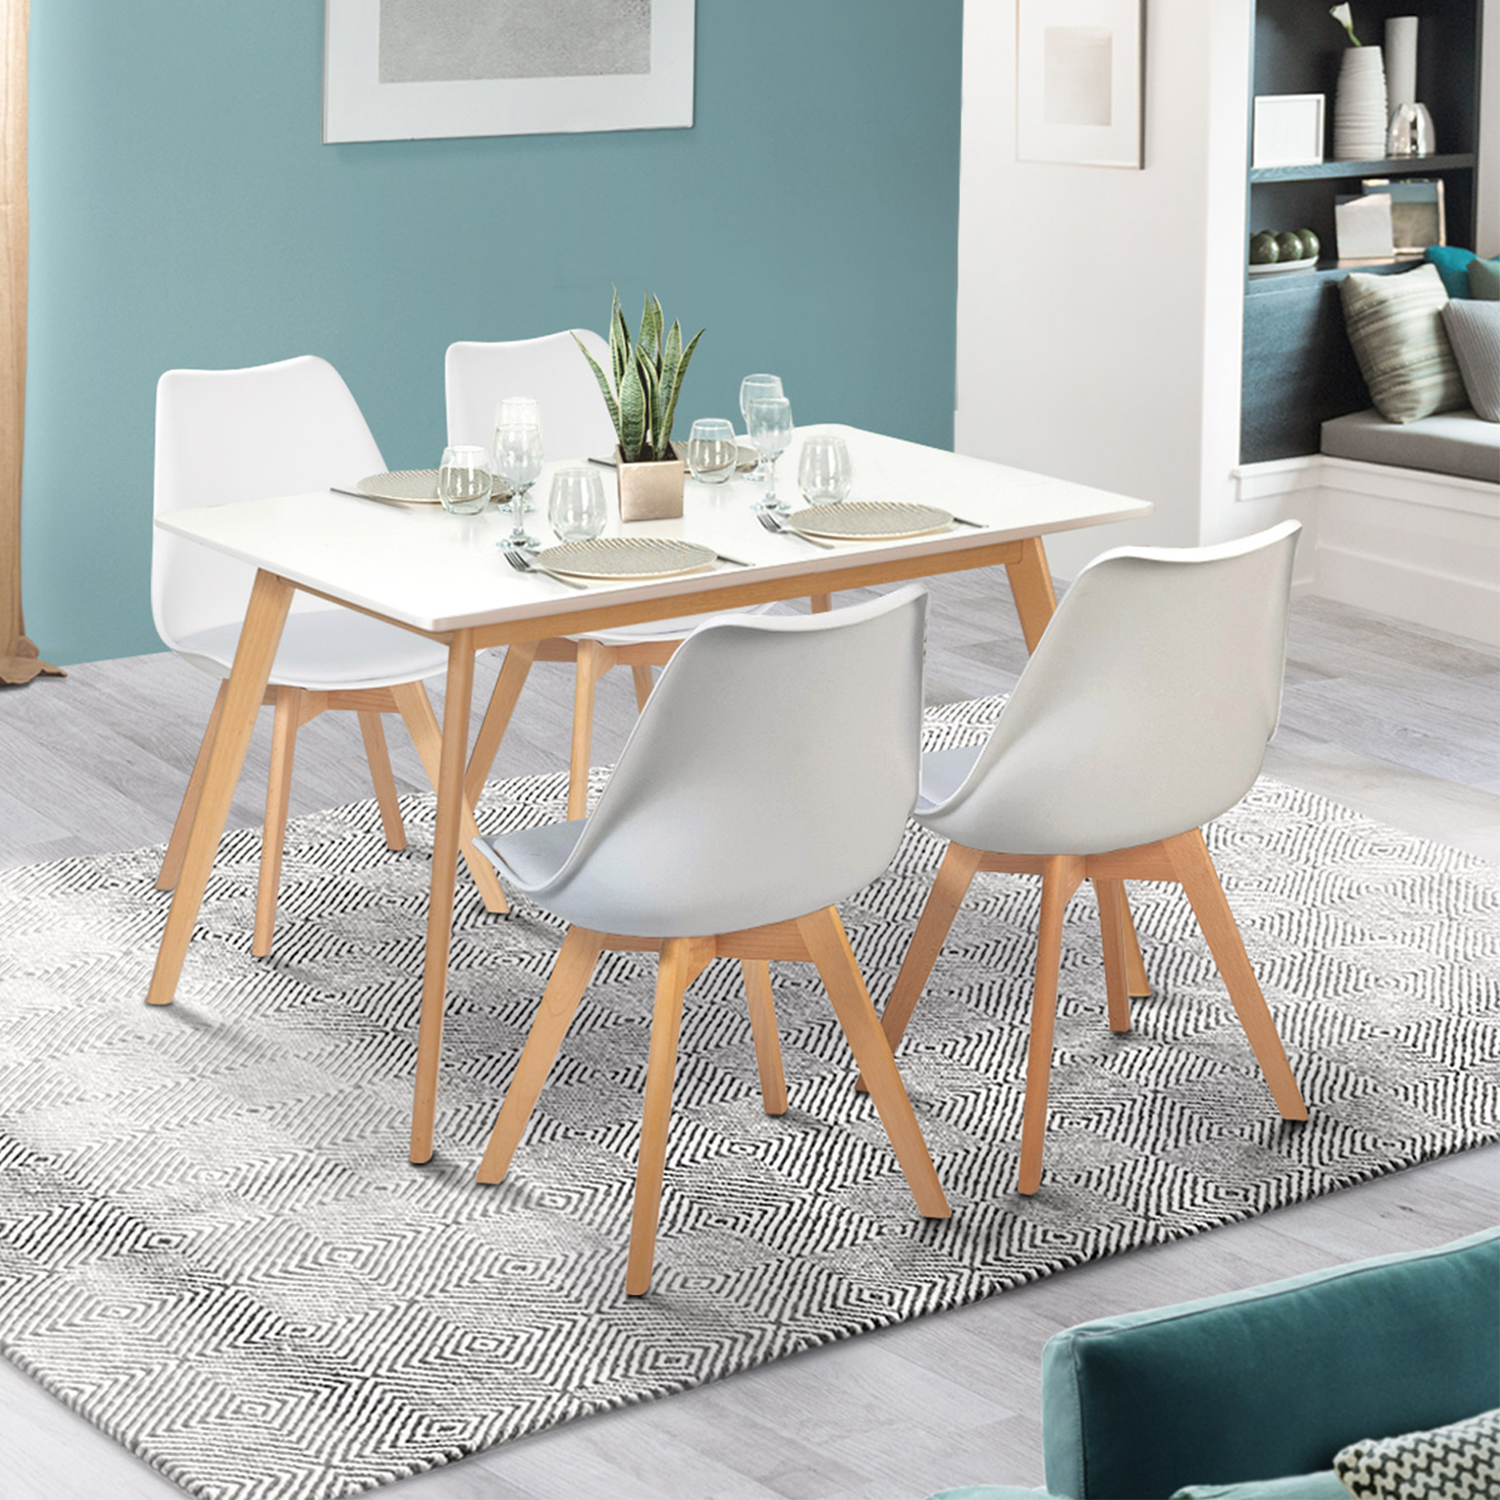 Chaise design scandinave beige et grise pour un intérieur apaisant